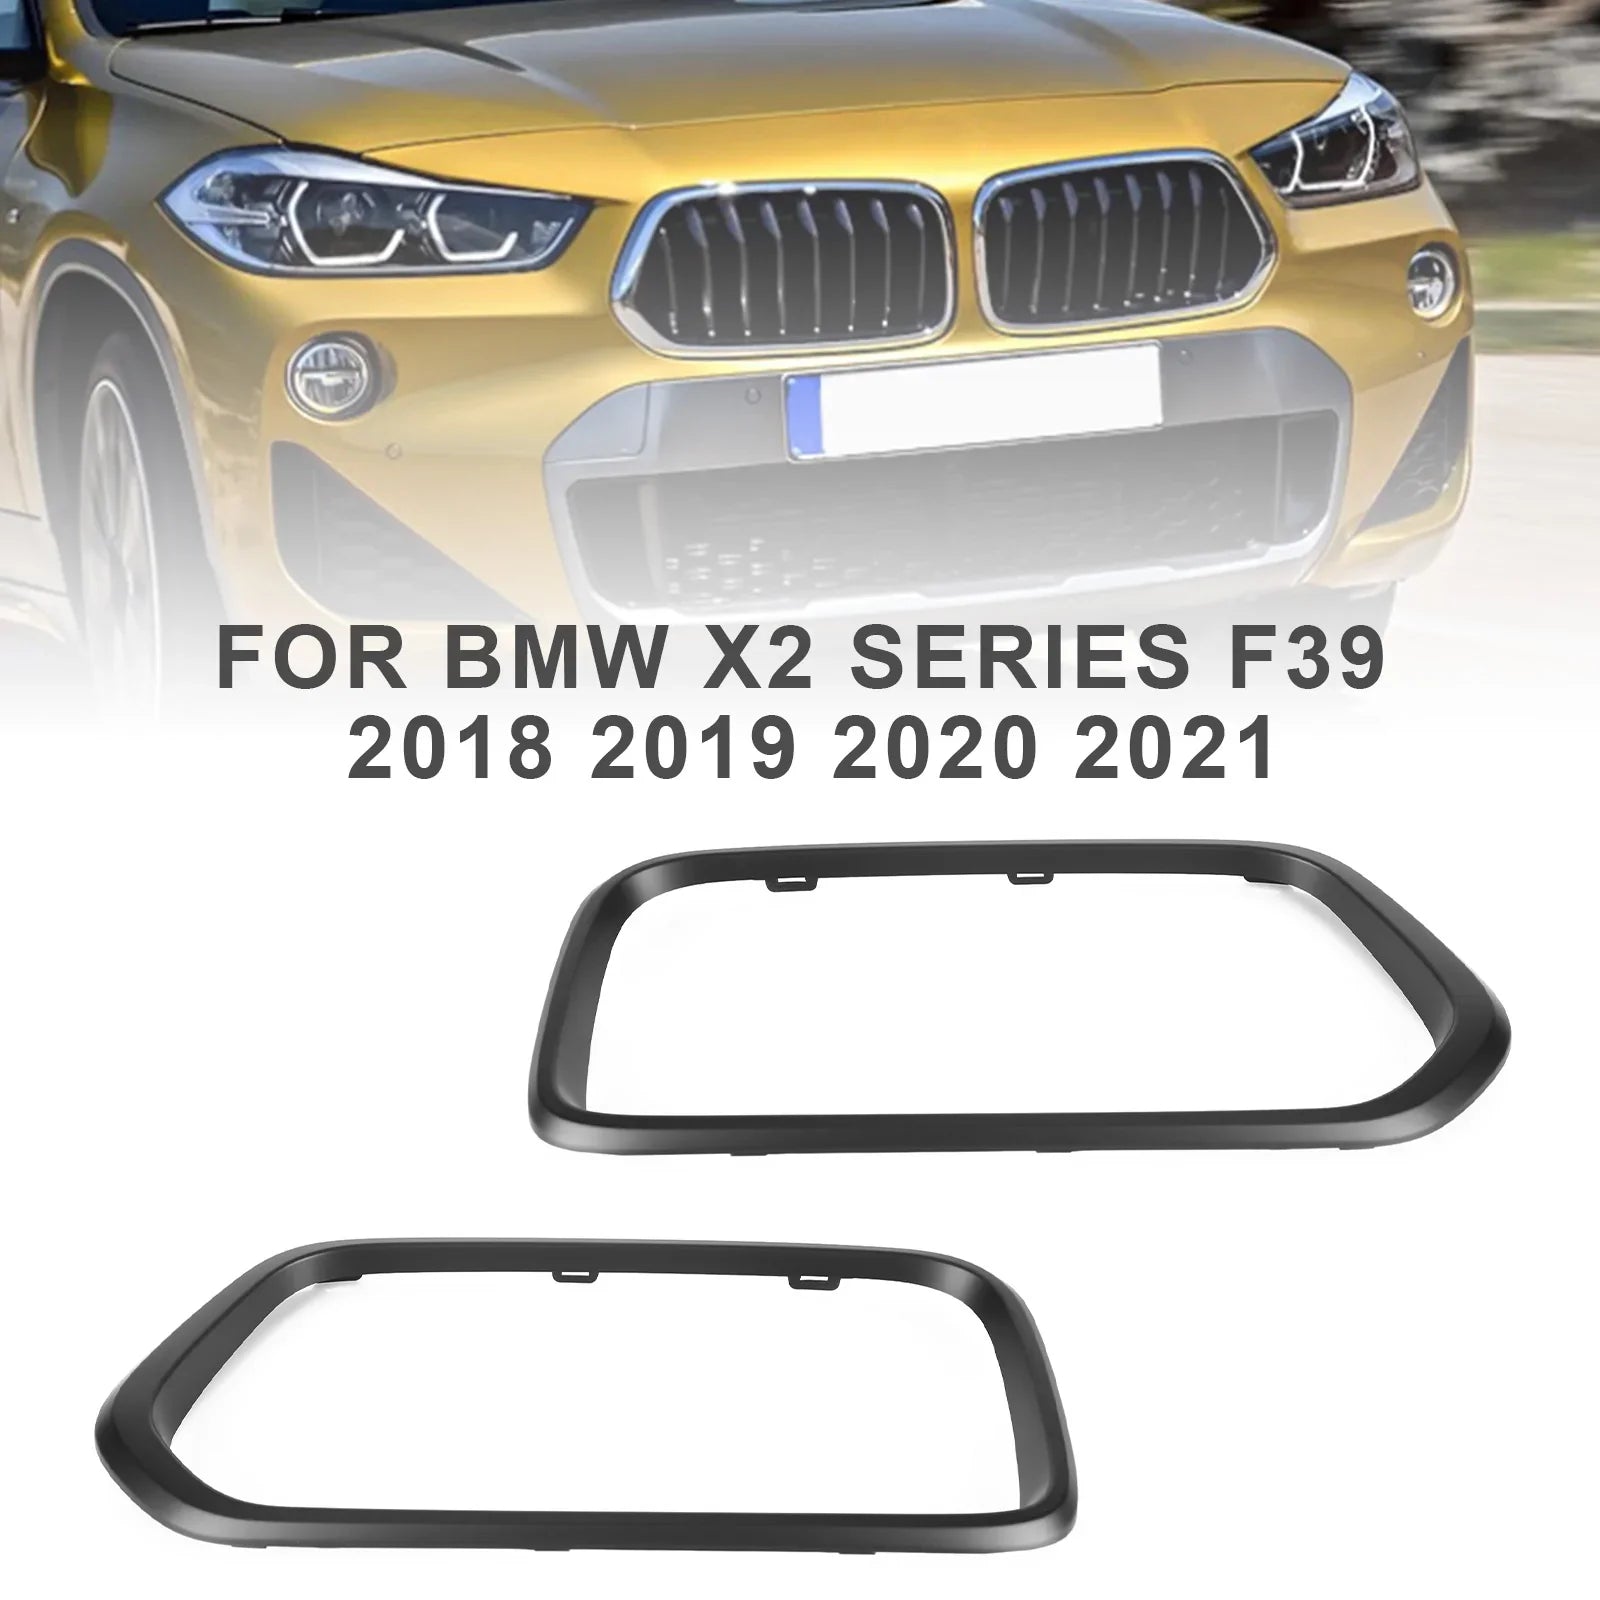 2018-2021 BMW X2 Series F39 Embellecedor de marco de rejilla de parachoques delantero negro mate